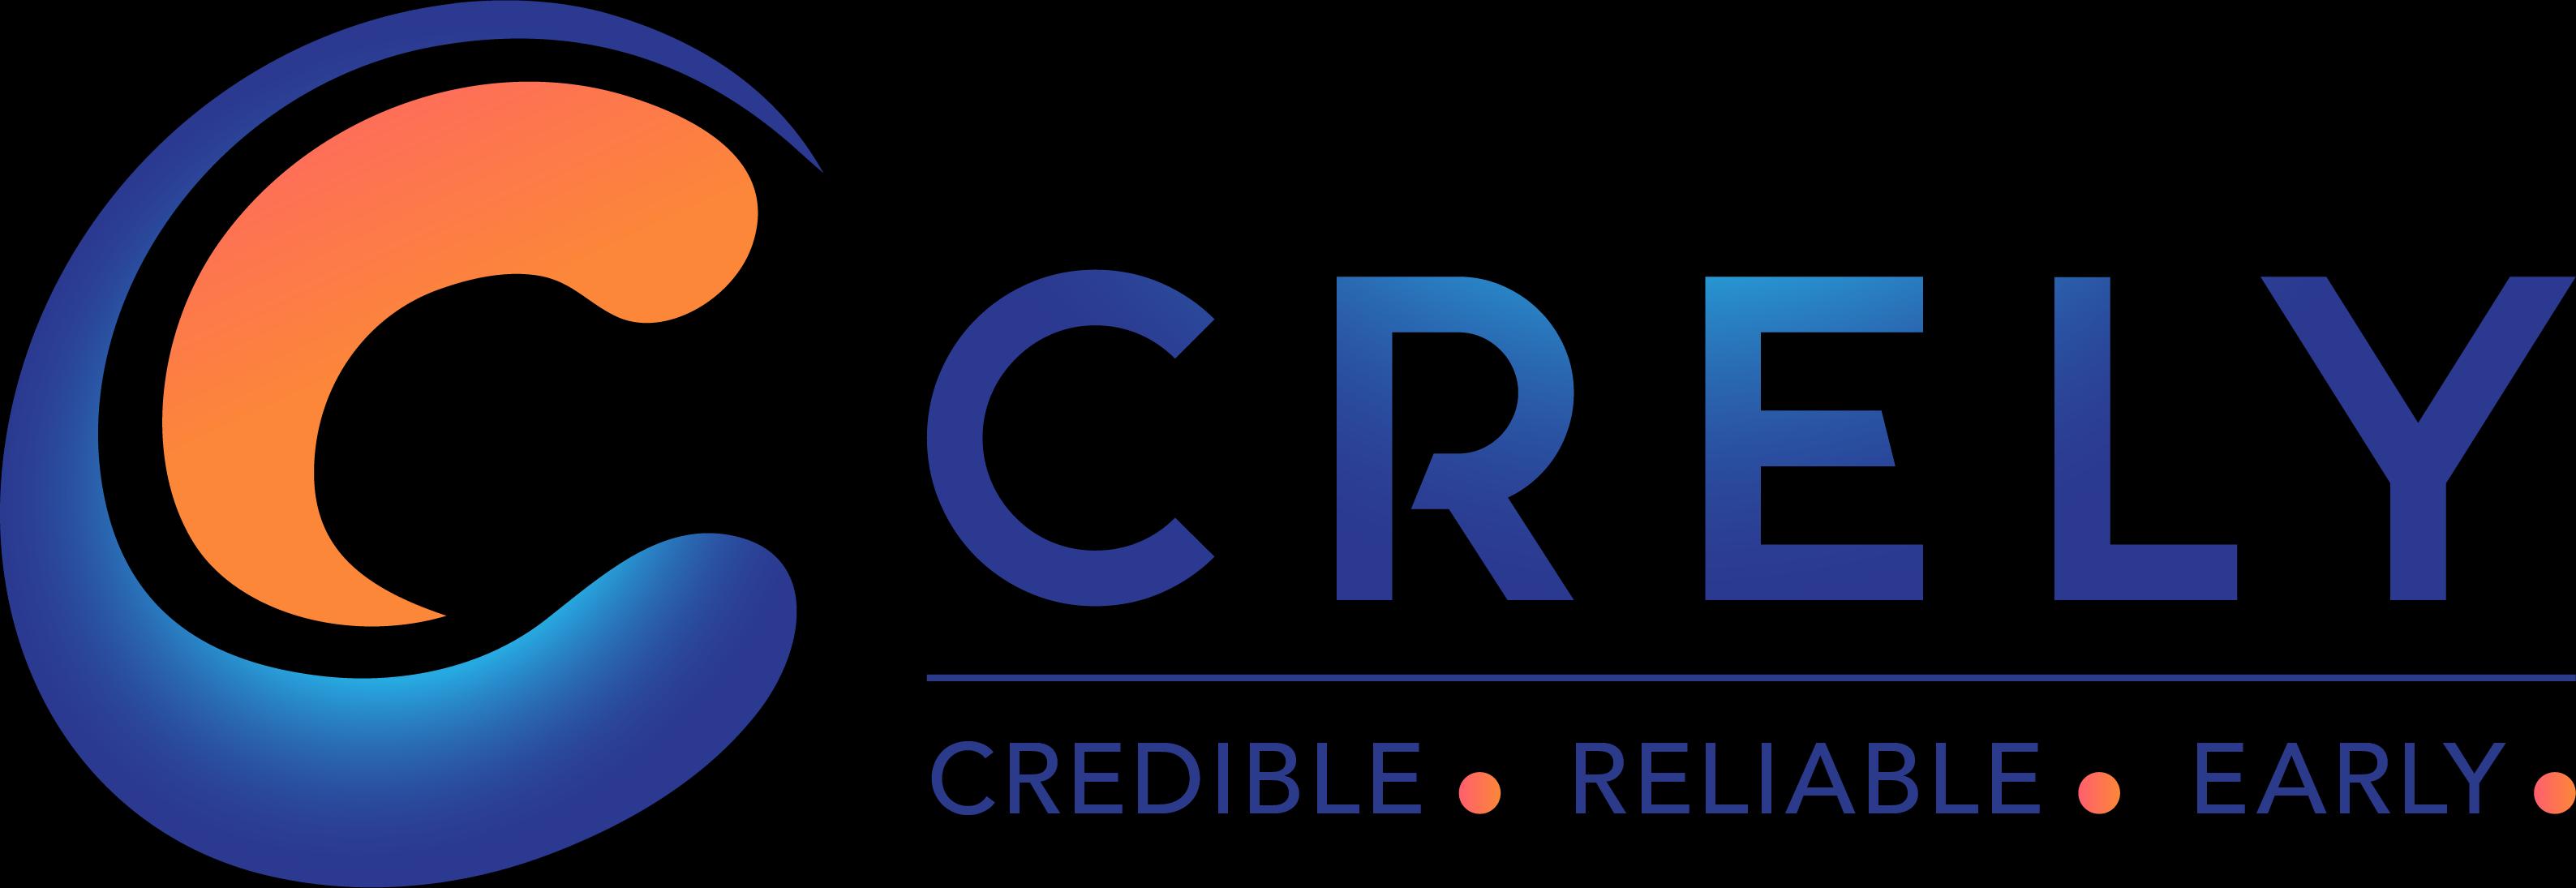 Crely_logo